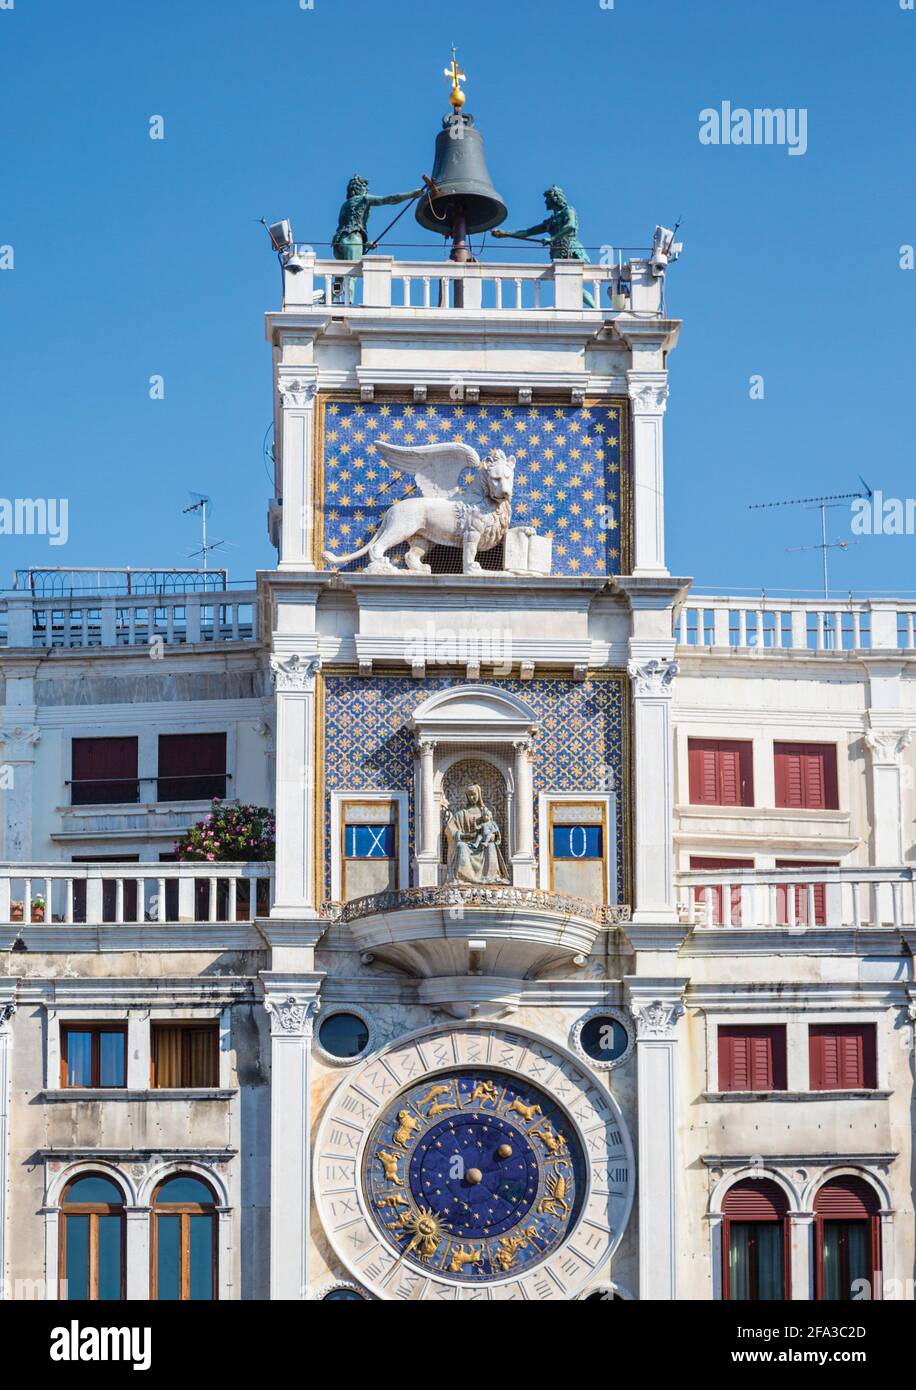 Venedig, Provinz Venedig, Venetien, Italien. Torre dell'Orologio, oder der Uhrenturm, auf der Piazza San Marco. Der Turm stammt aus den 1490er Jahren. Venedig und ich Stockfoto